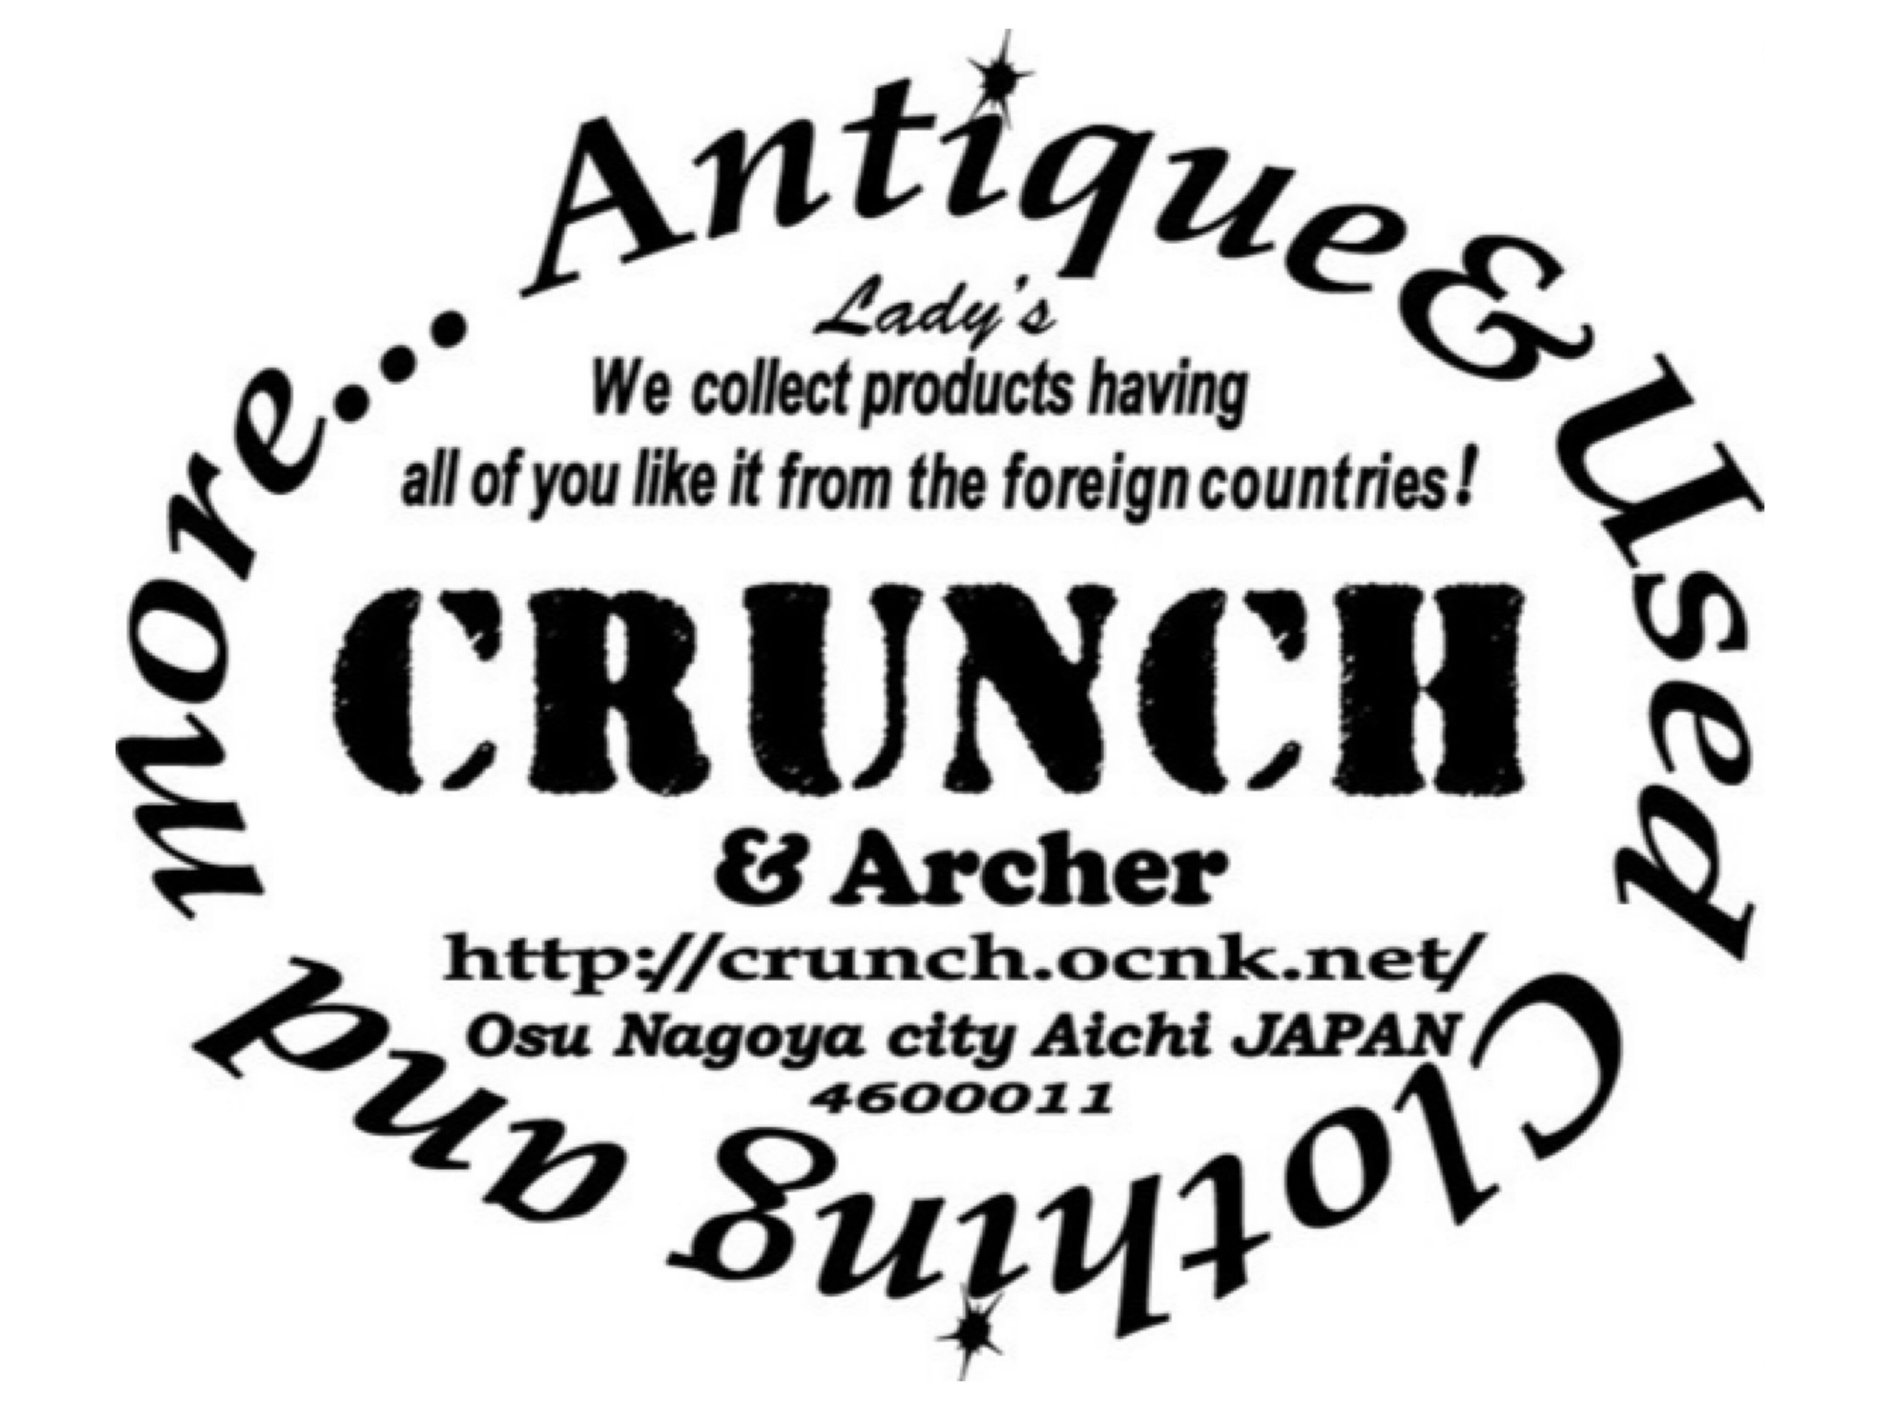 CRUNCH & Archer